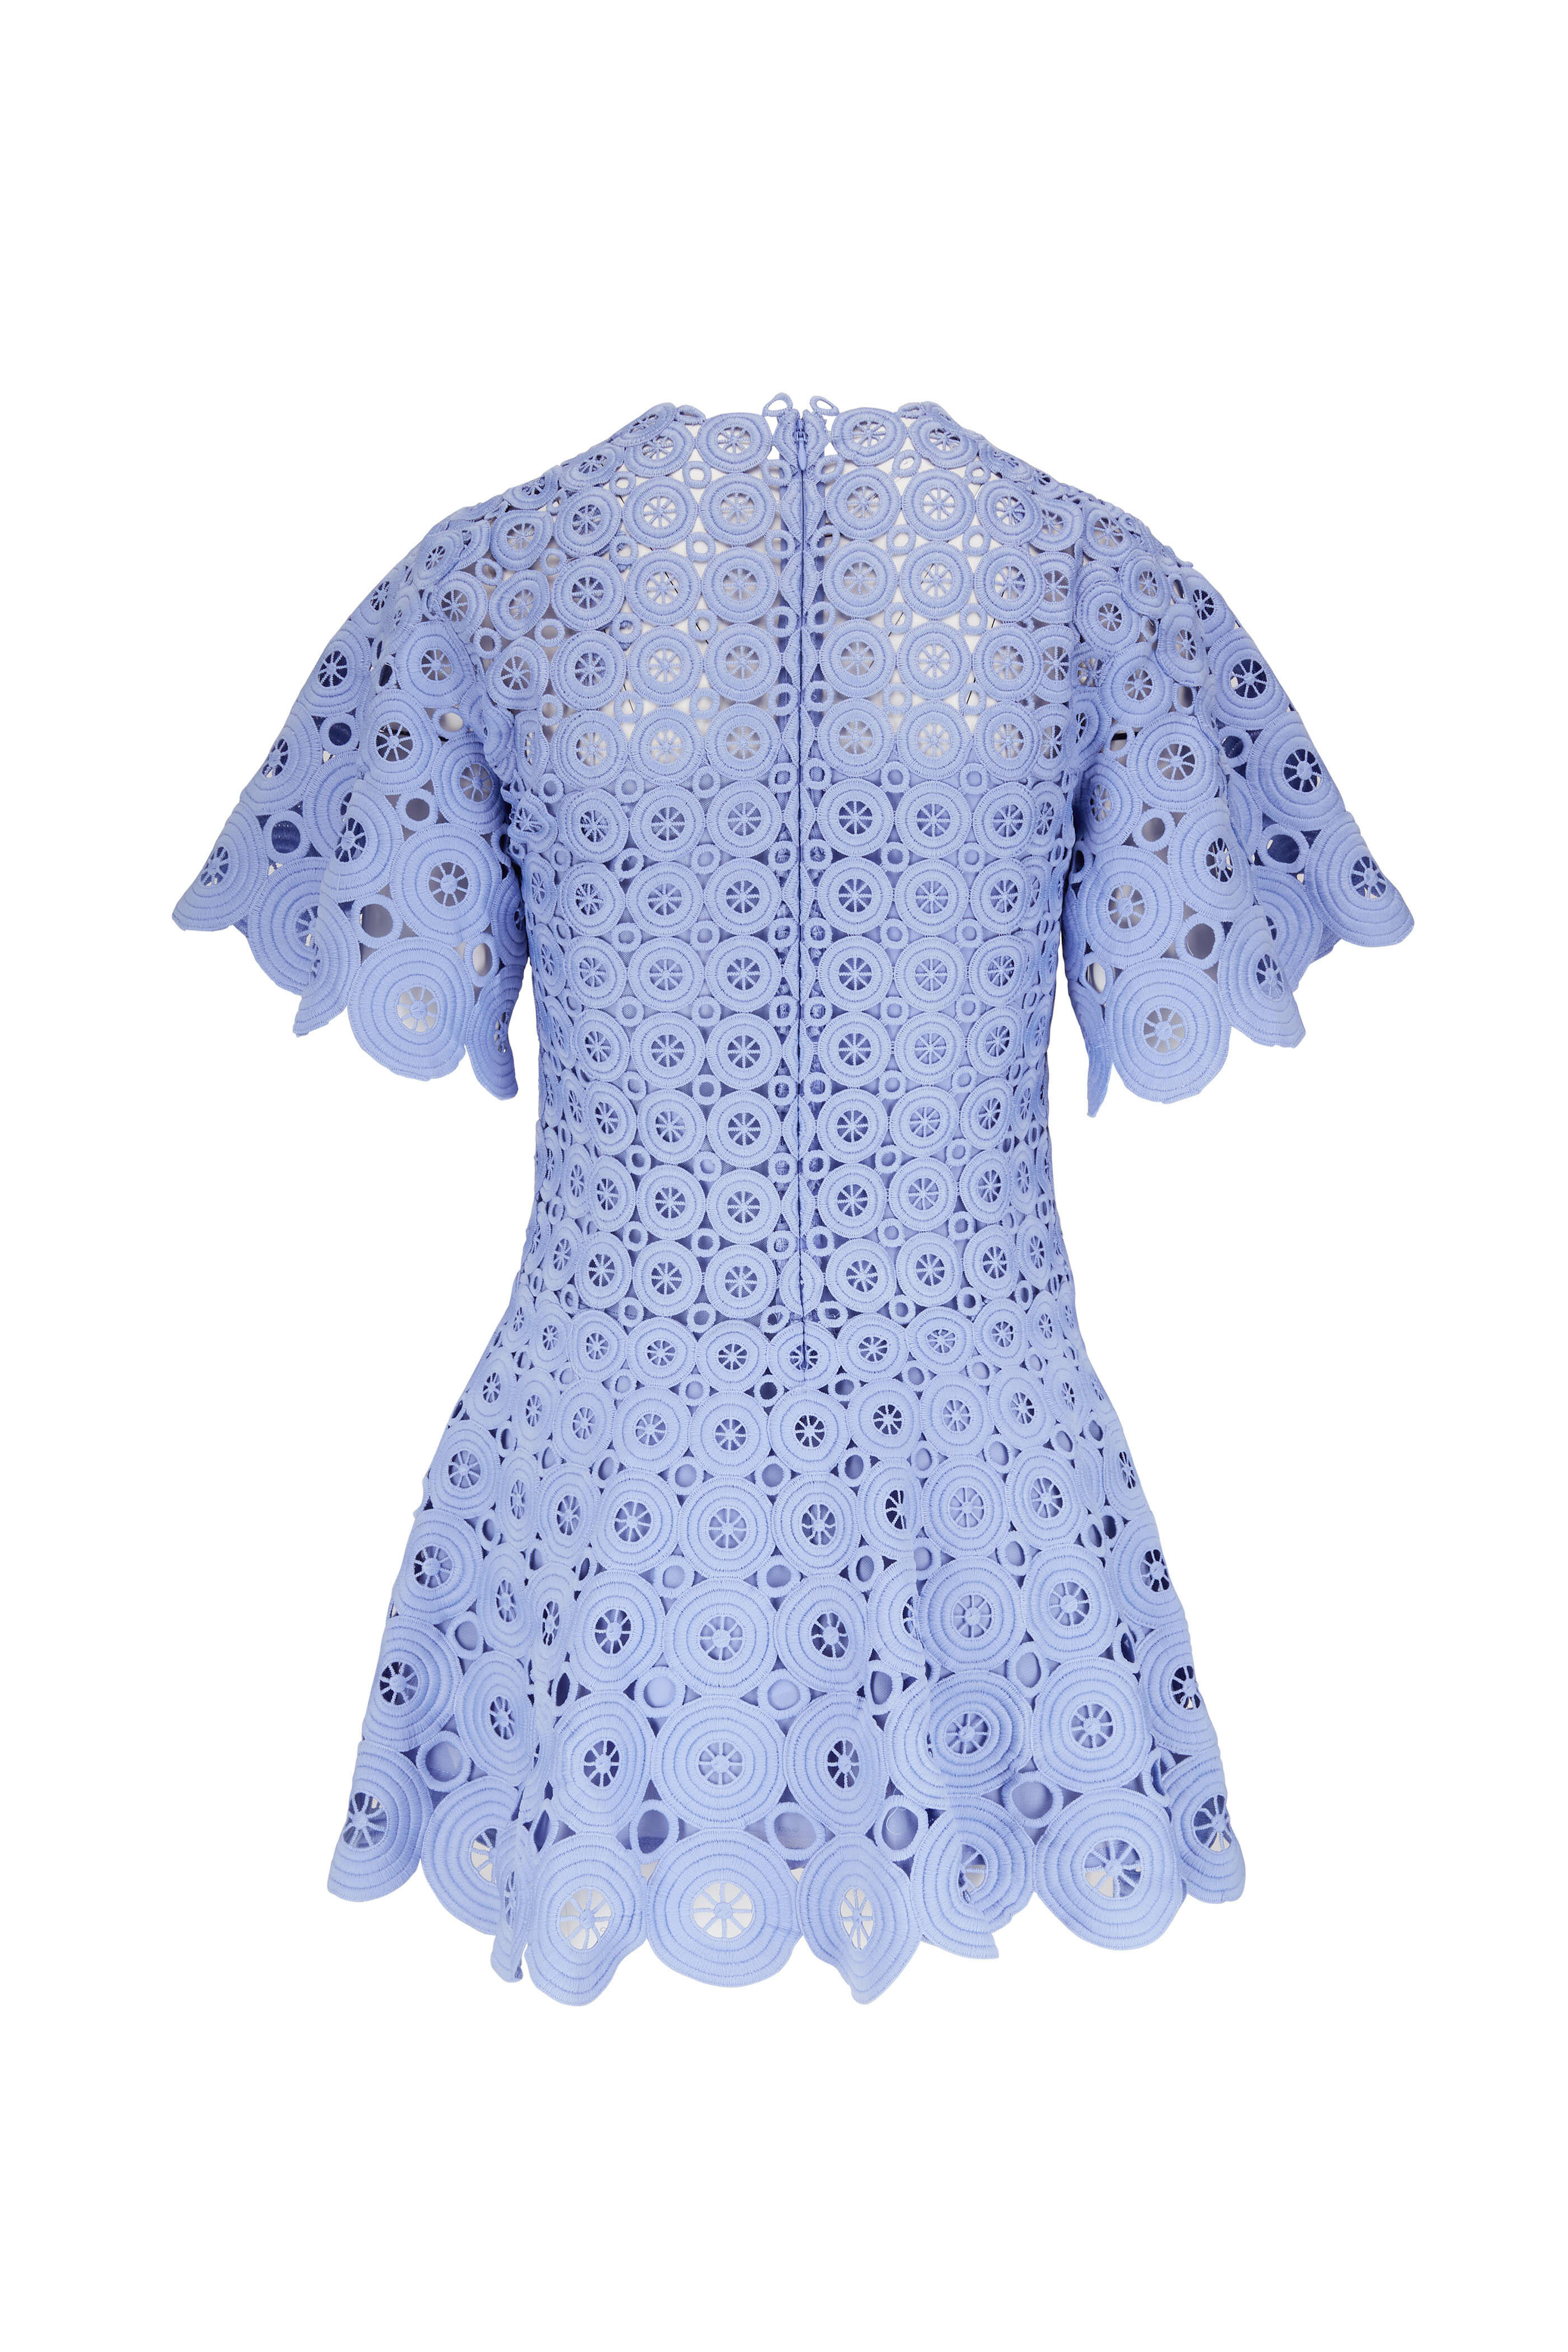 Jonathan Simkhai - Laney Hydrangea Circle Lace Dress